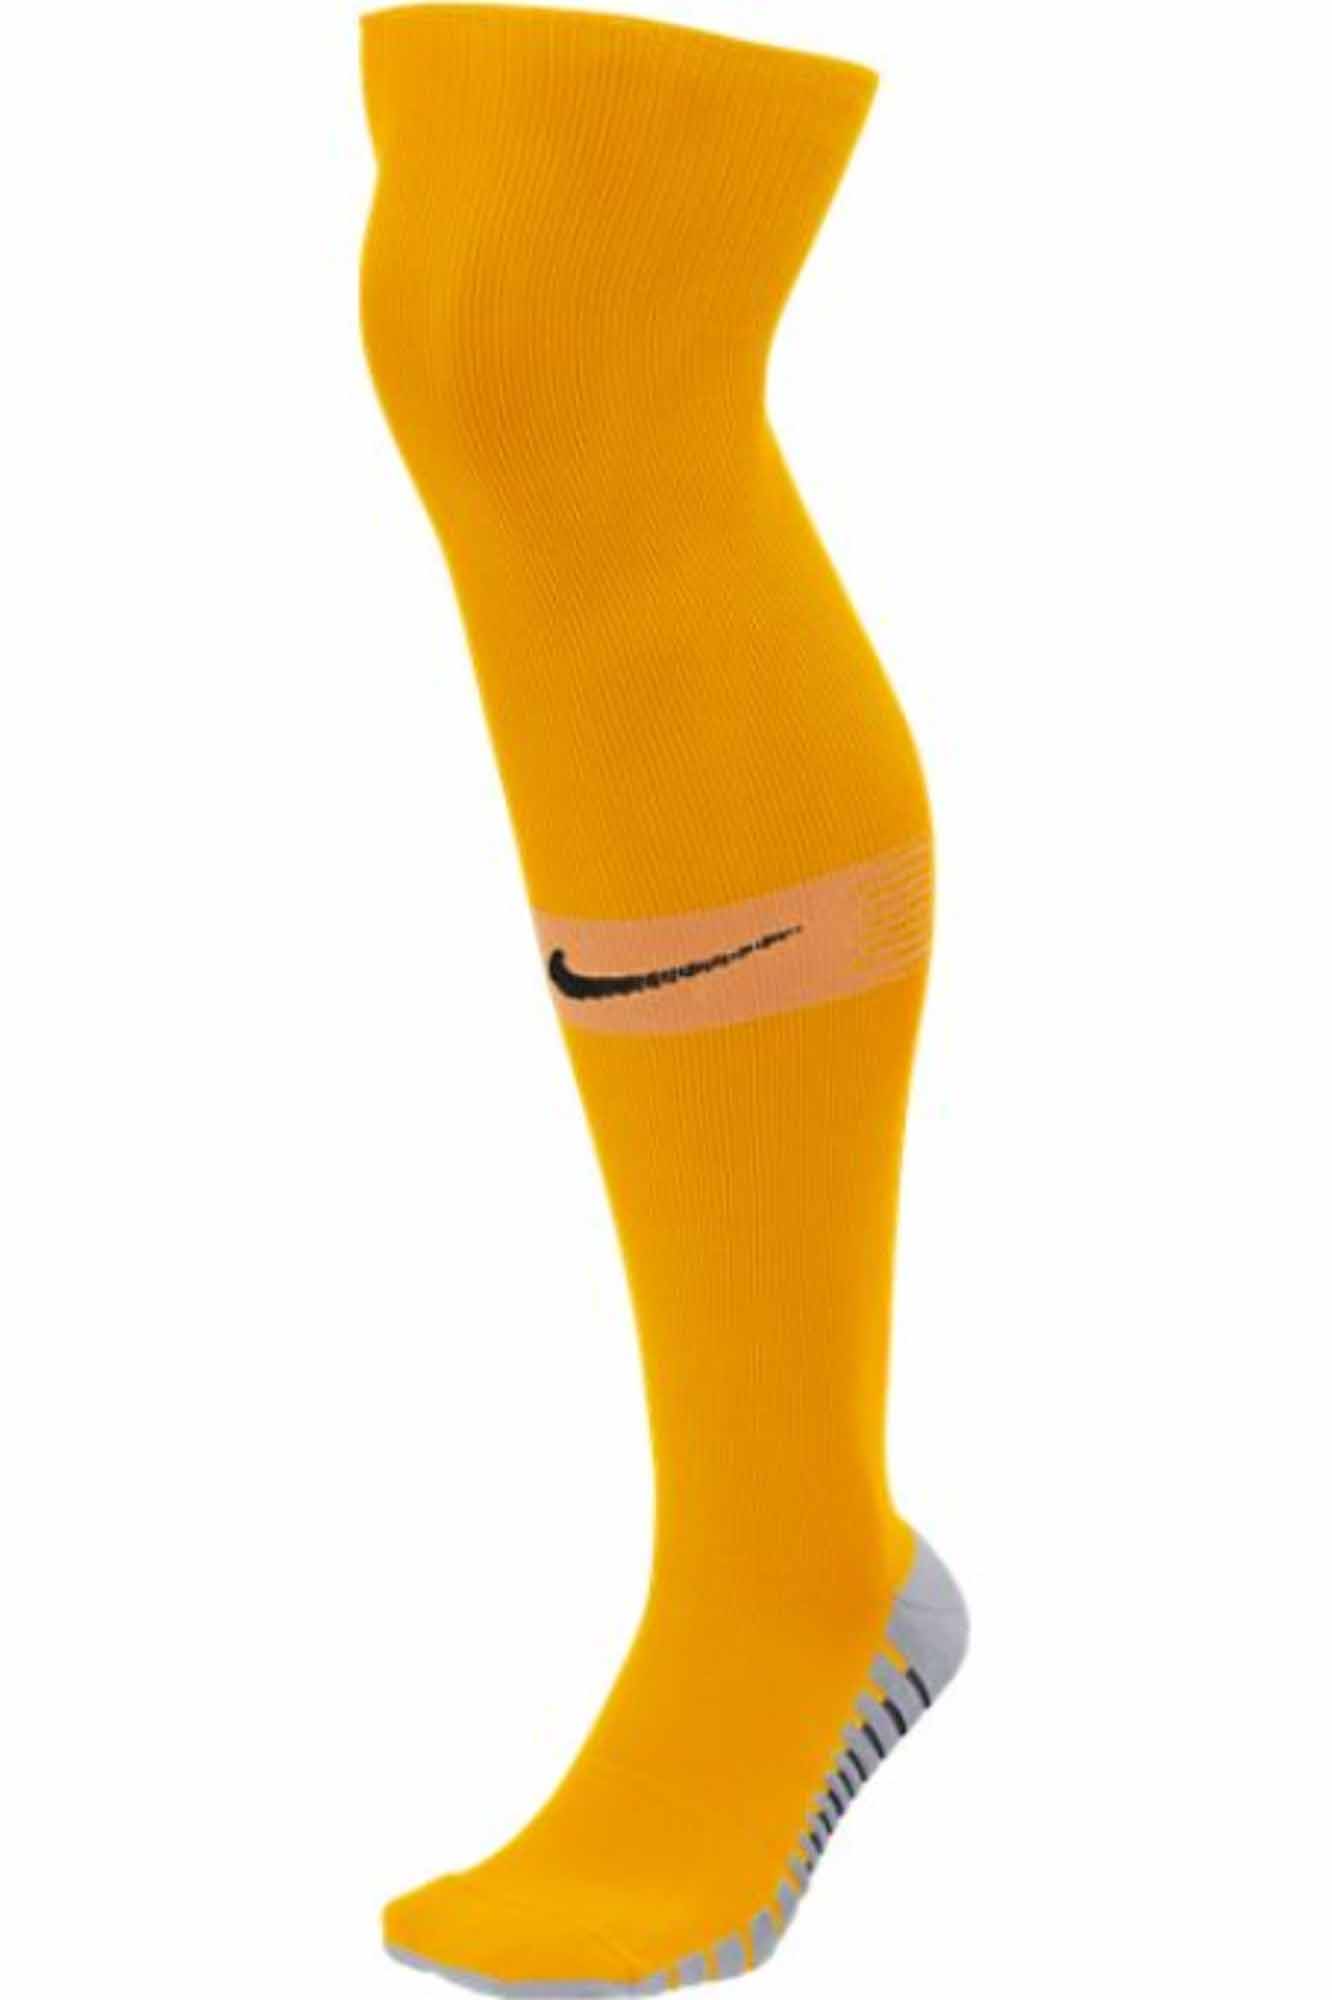 Nike Team Matchfit Soccer Socks - University Gold/Sundial - SoccerPro